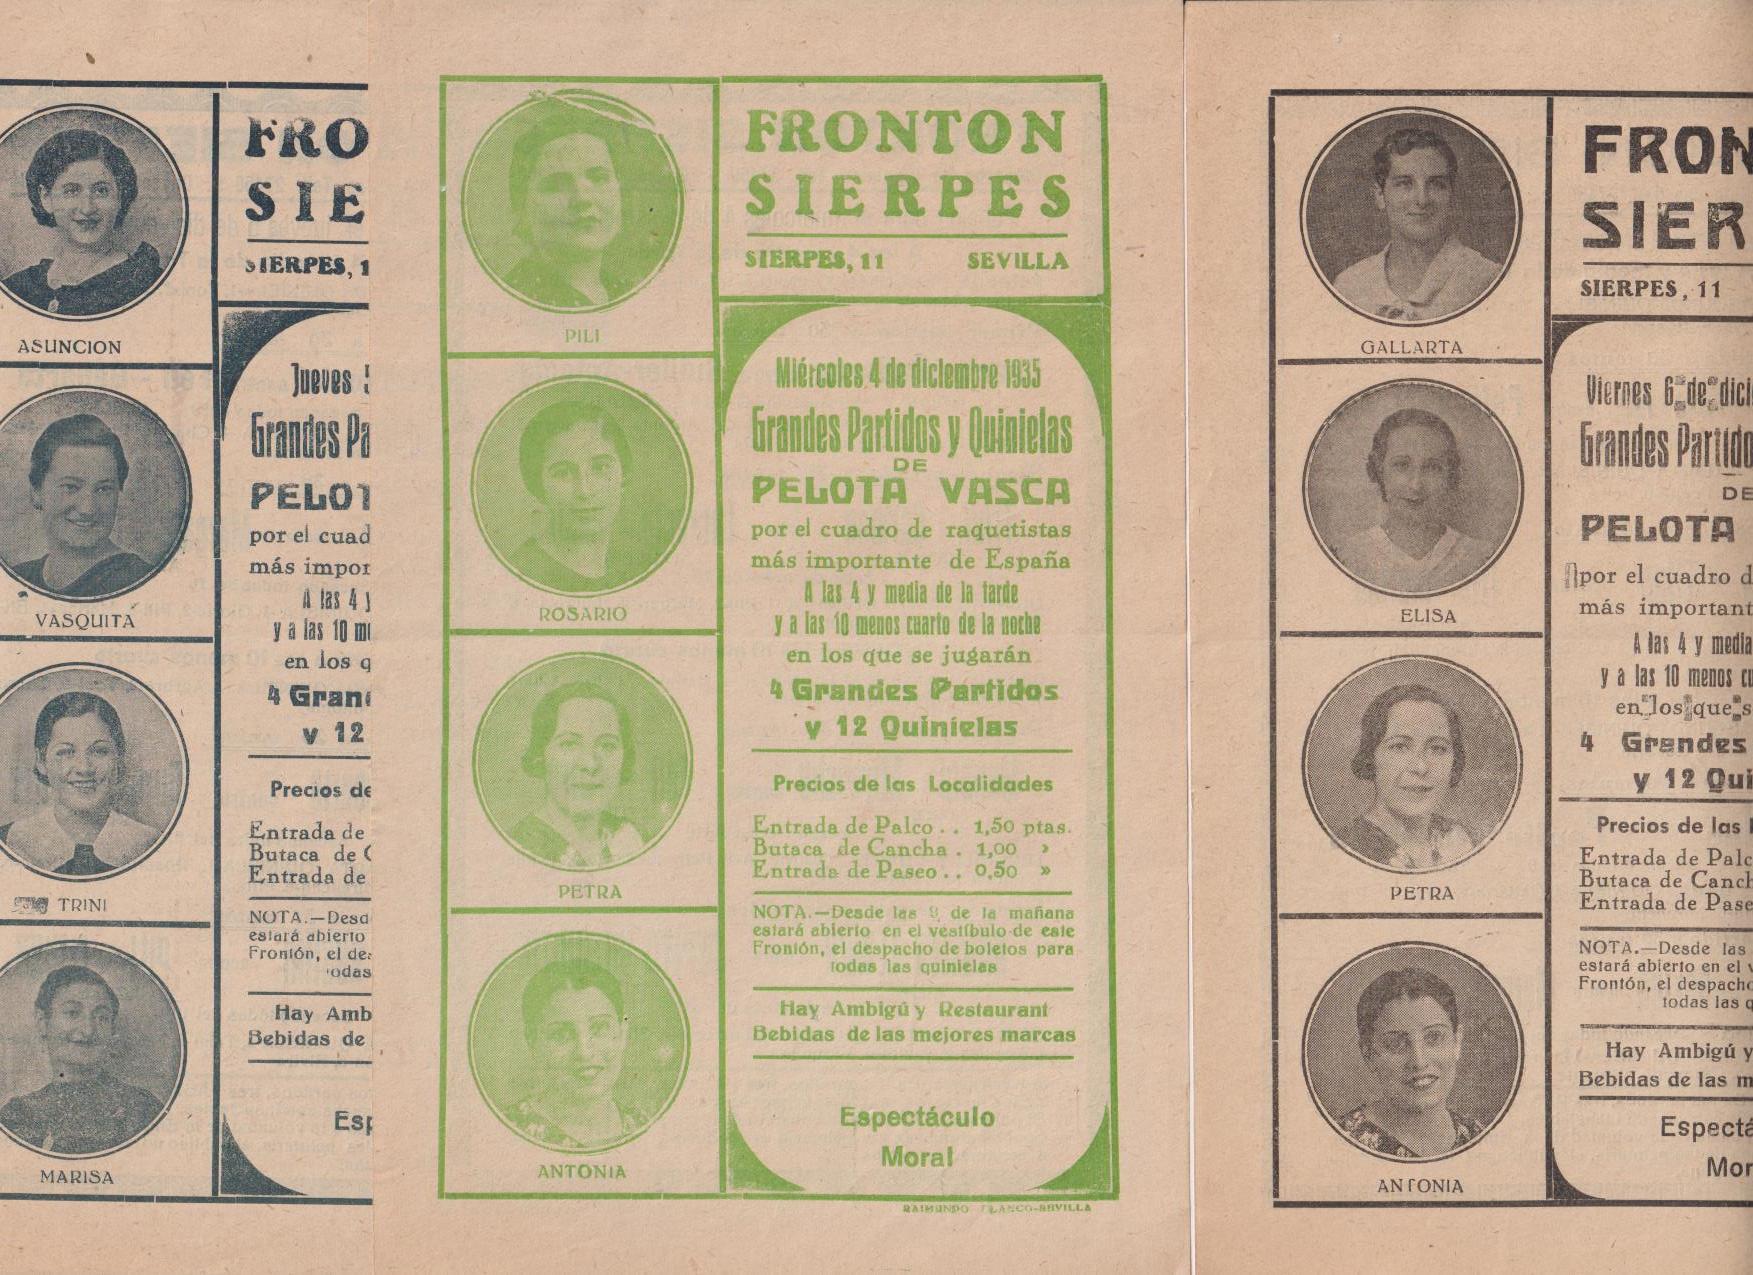 Frontón Sierpes. LOte de 3 Carteles de mano (22x14) Pelota Vasca. 4,5 y 6 Enero 1935. Sevilla